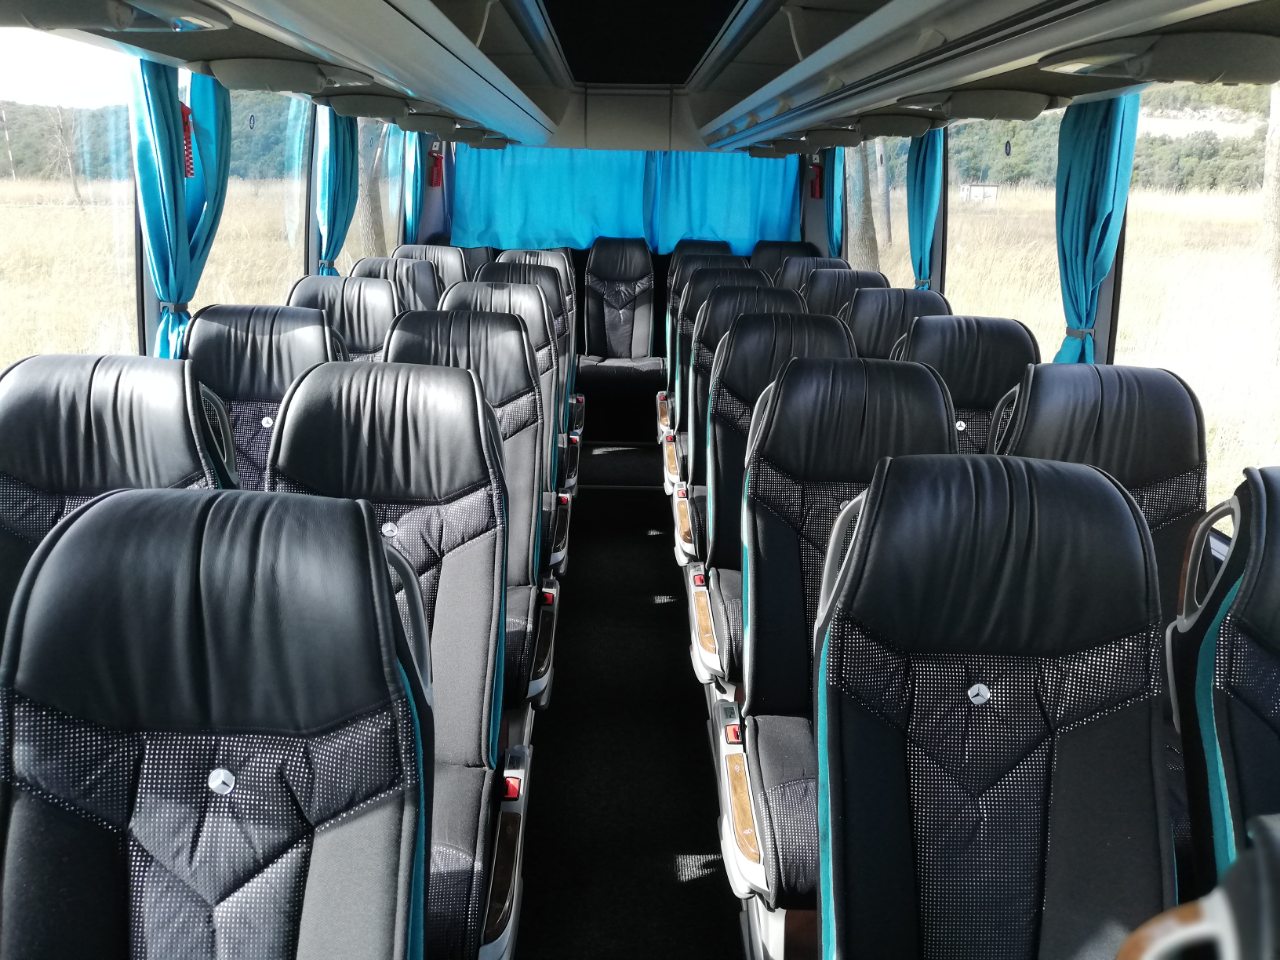 Interior of tourist bus